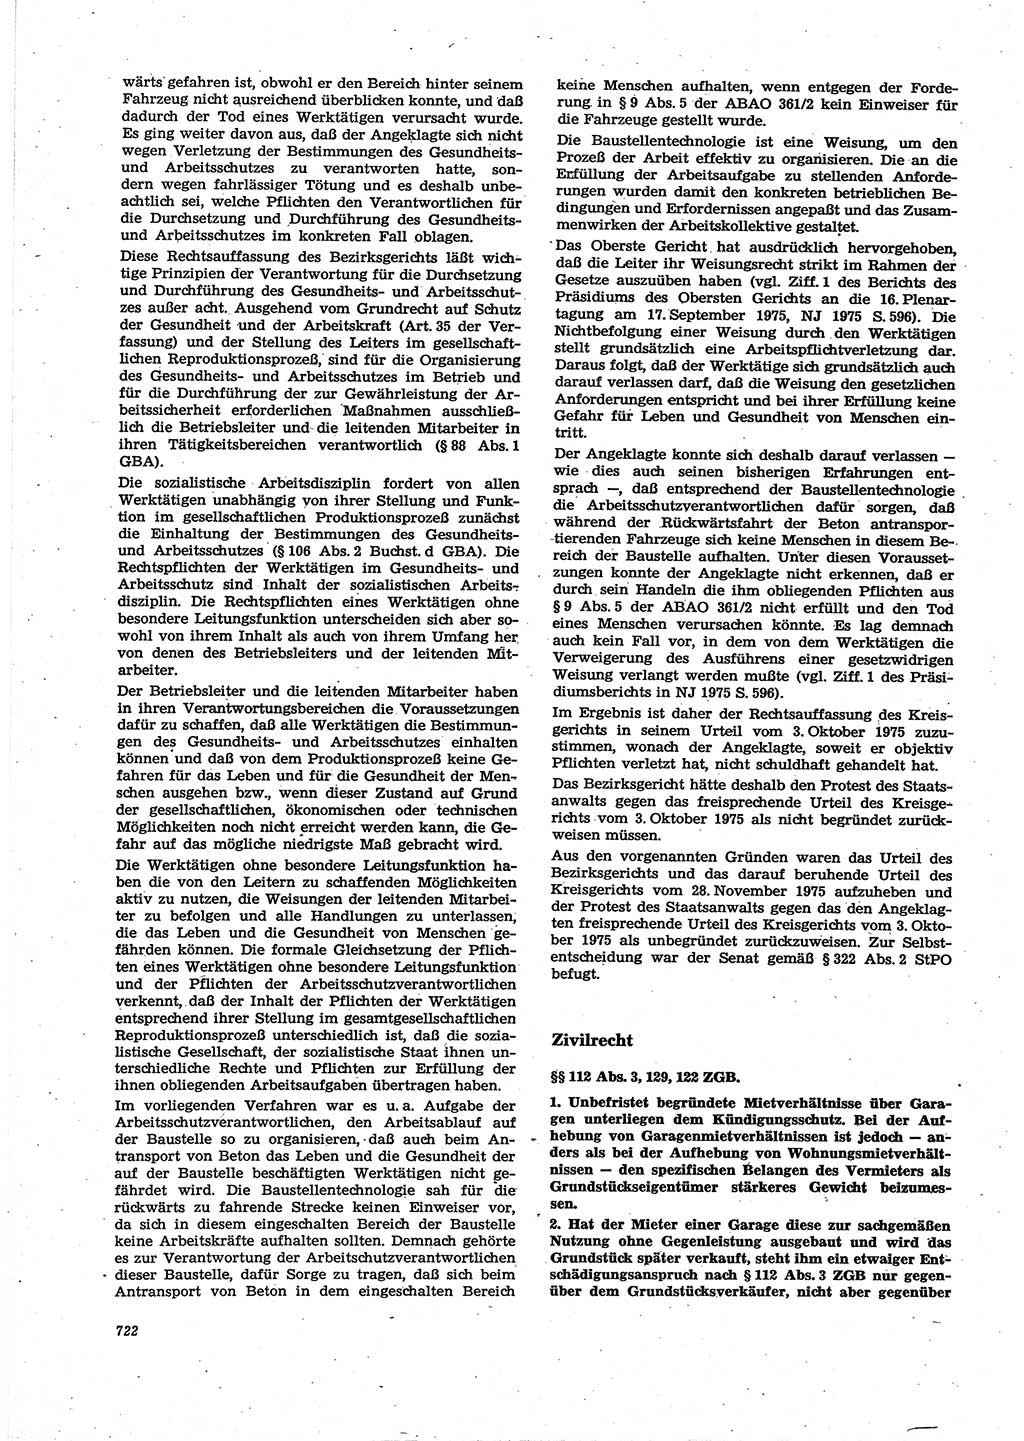 Neue Justiz (NJ), Zeitschrift für Recht und Rechtswissenschaft [Deutsche Demokratische Republik (DDR)], 30. Jahrgang 1976, Seite 722 (NJ DDR 1976, S. 722)